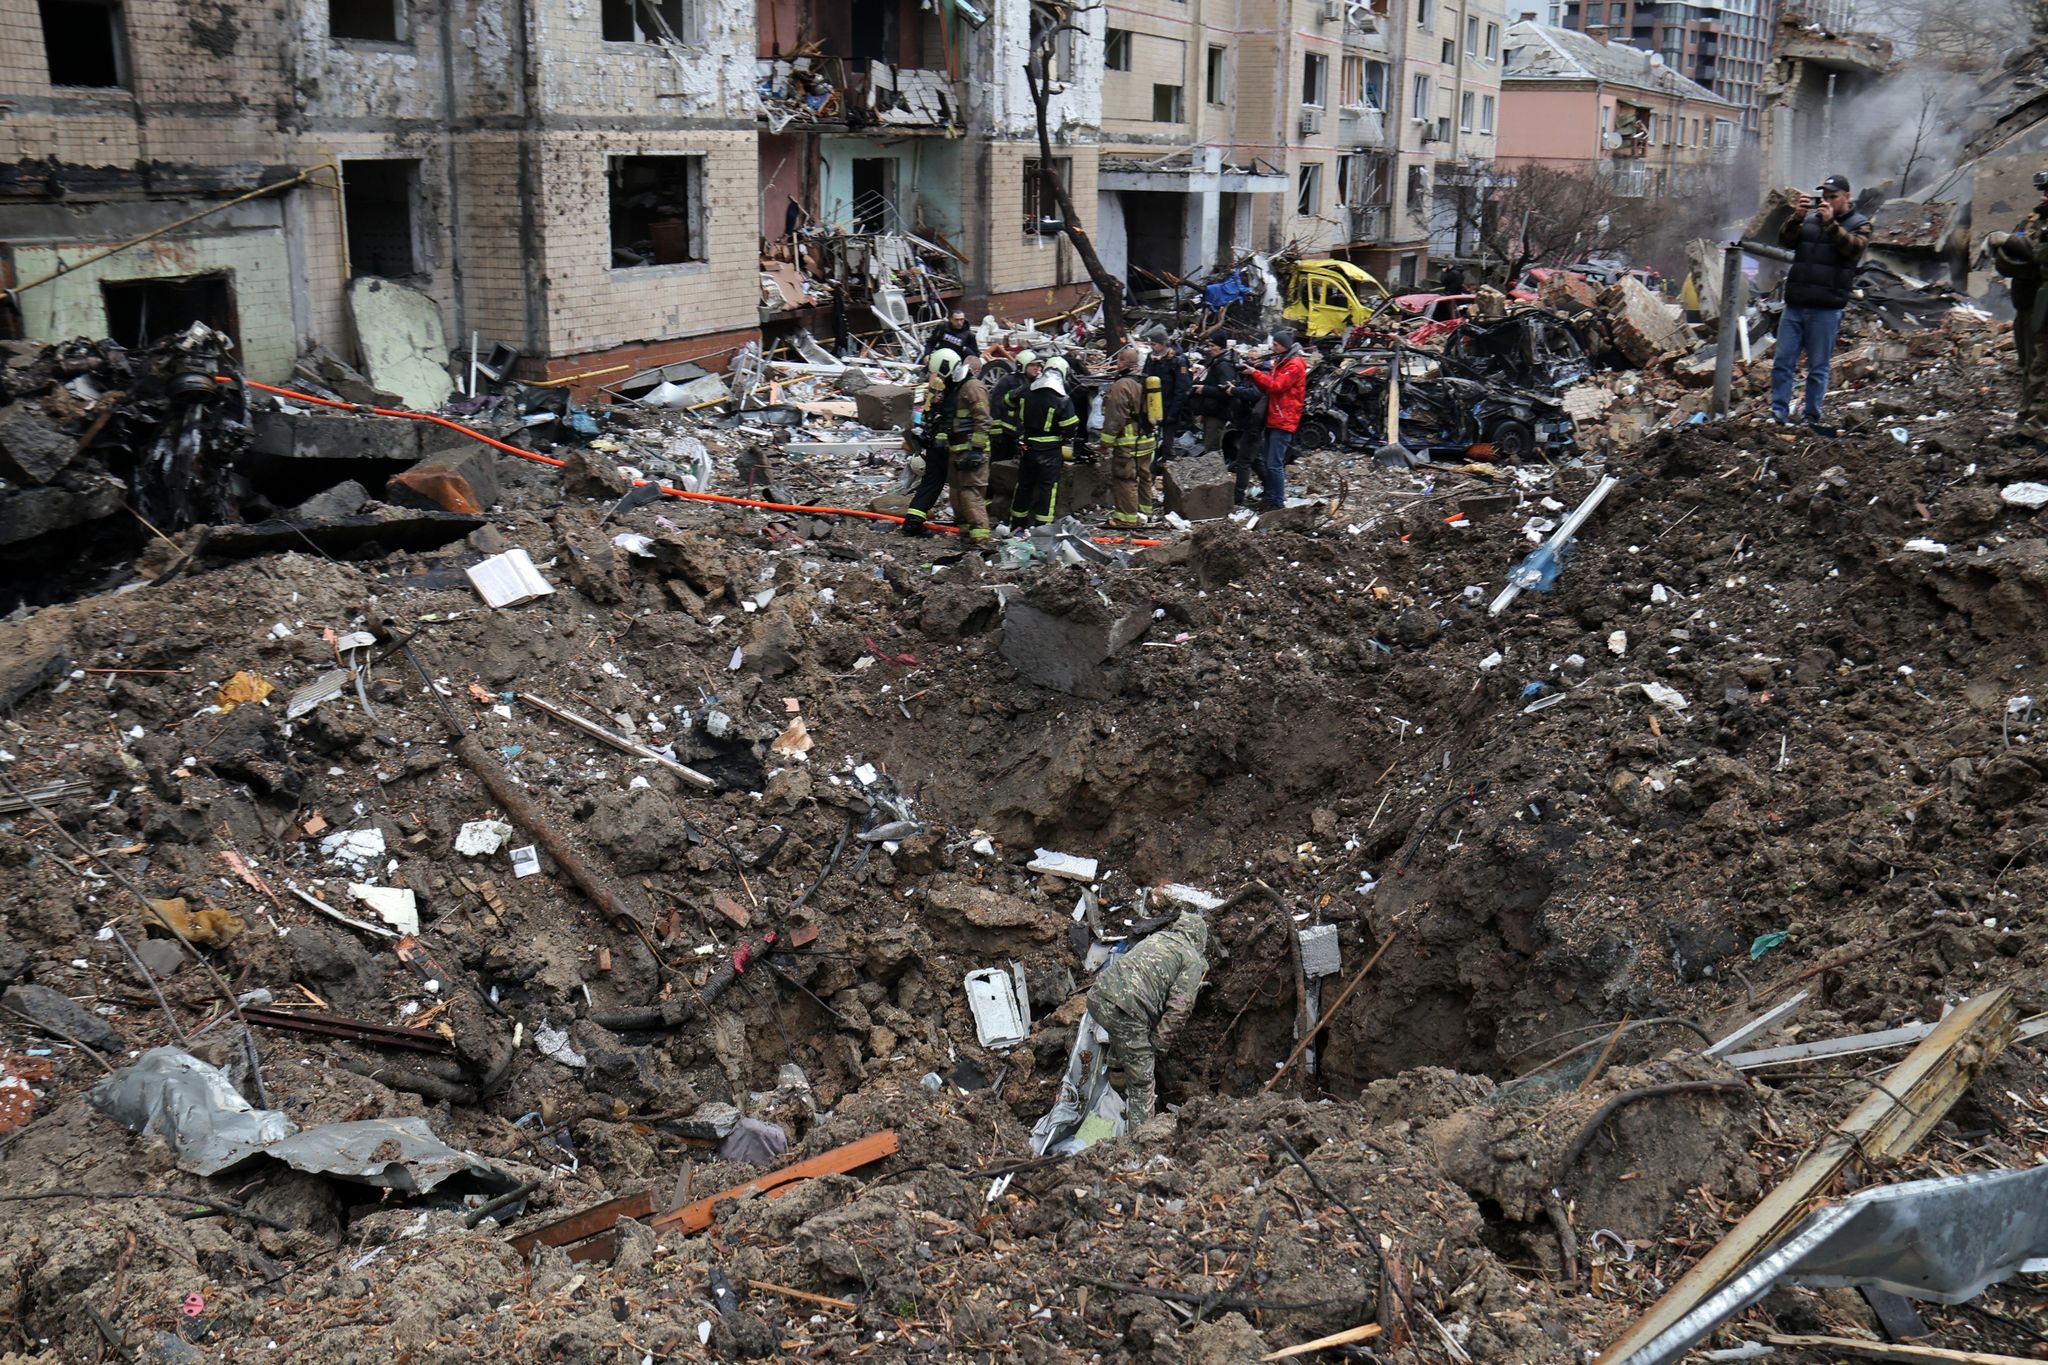 Rettungskräfte stehen neben einem Krater in der Nähe beschädigter Wohngebäude nach einem russischen Raketenangriff. Foto: -/Ukrinform/dpa